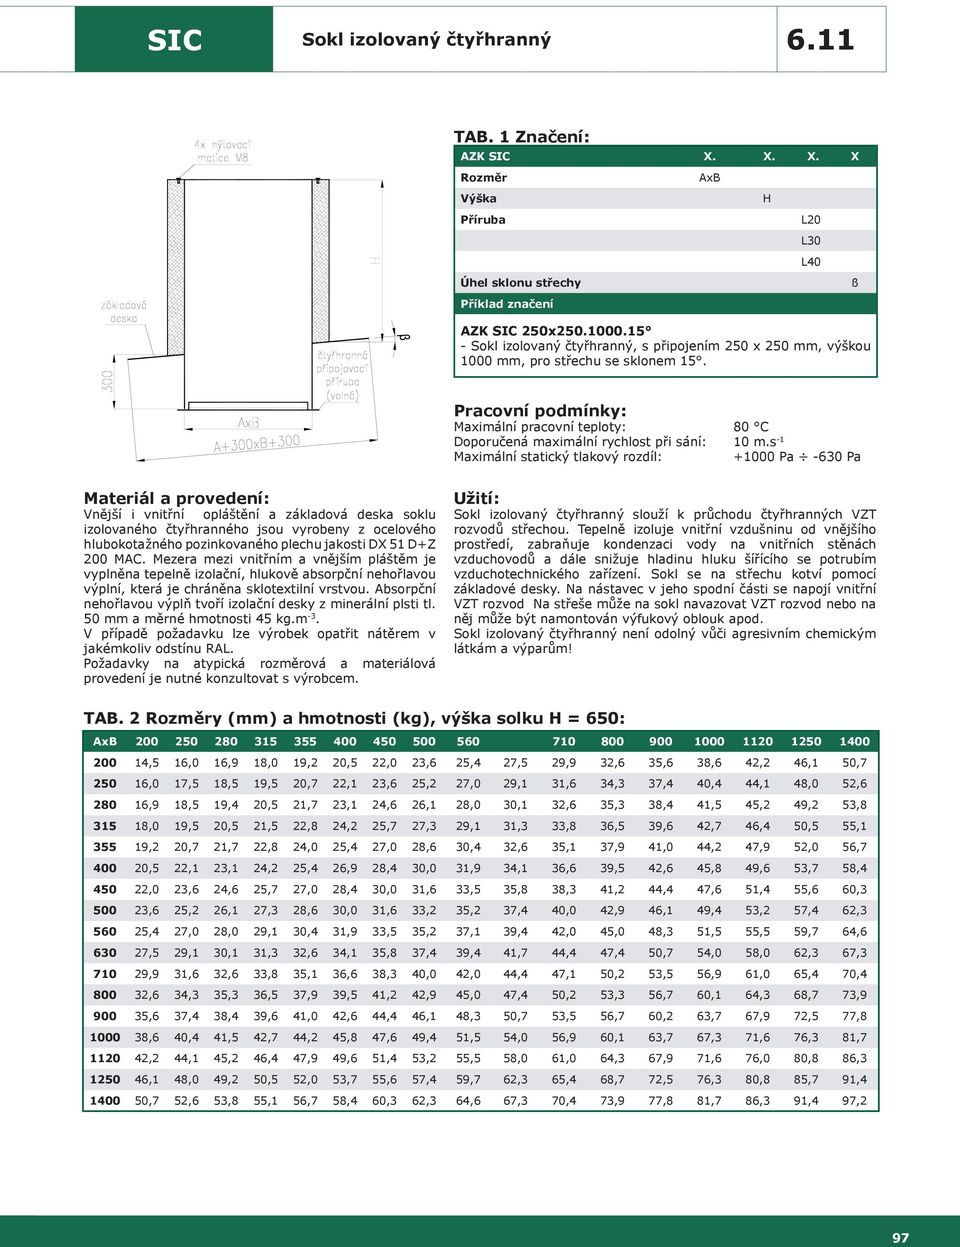 s -1 Vnější i vnitřní opláštění a základová deska soklu izolovaného čtyřhranného jsou vyrobeny z ocelového hlubokotažného pozinkovaného plechu jakosti DX 51 D+Z 200 MAC.